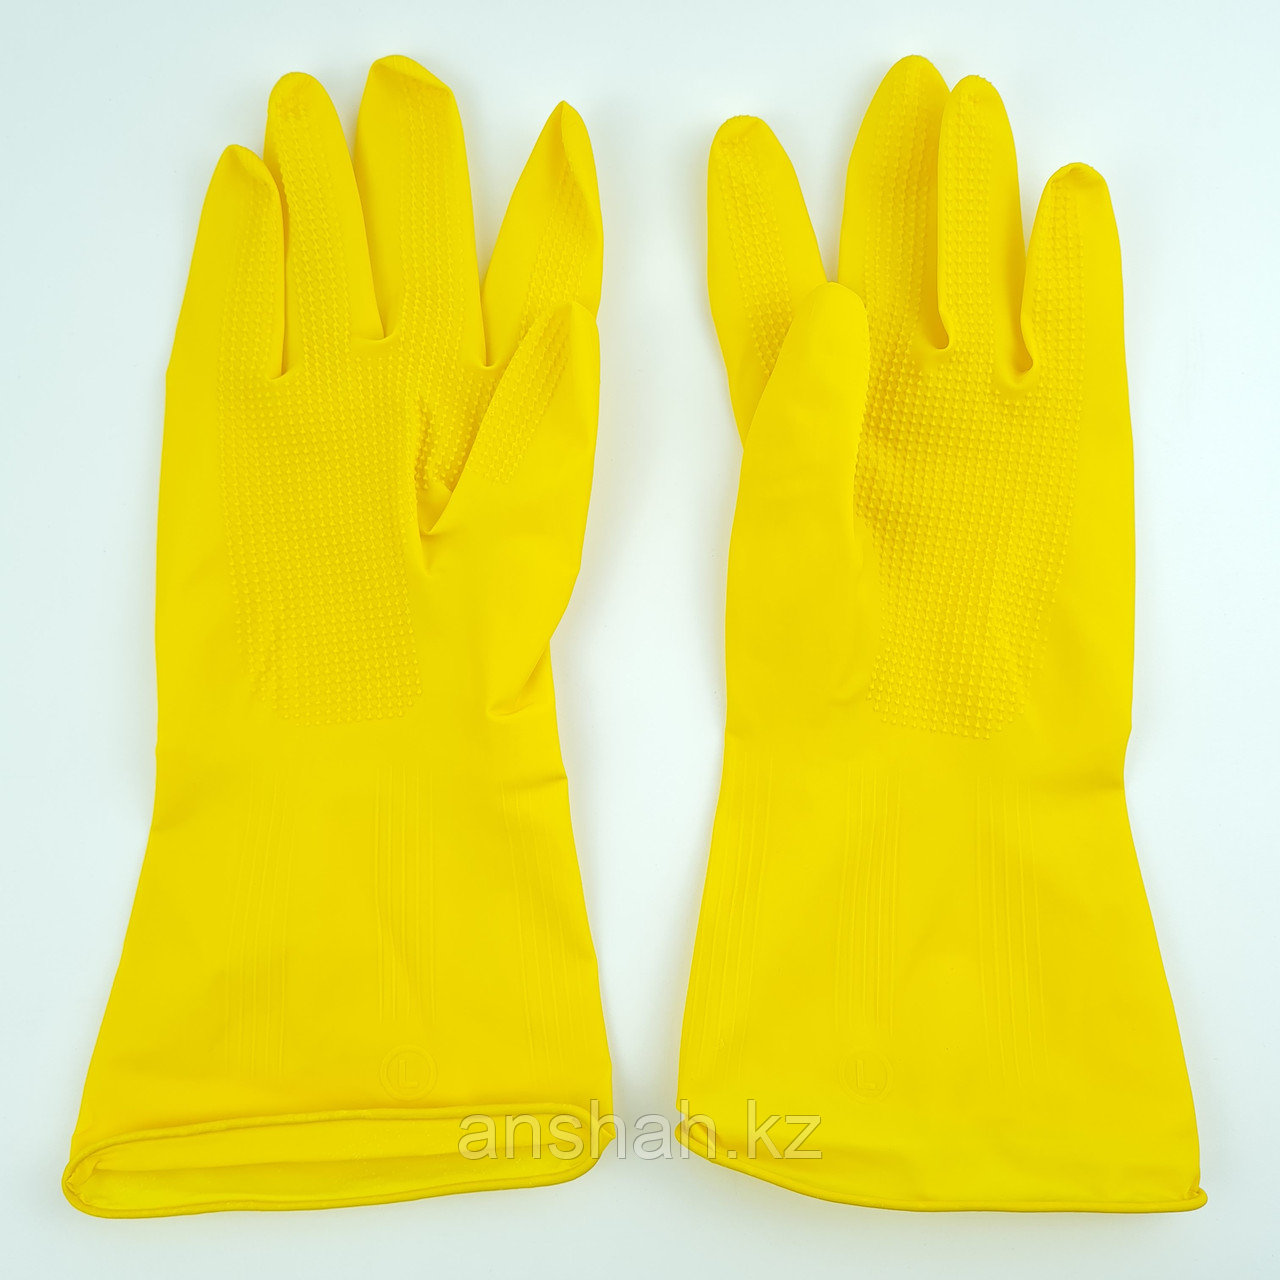 Резиновые перчатки «Маска Девочка», размер L, M